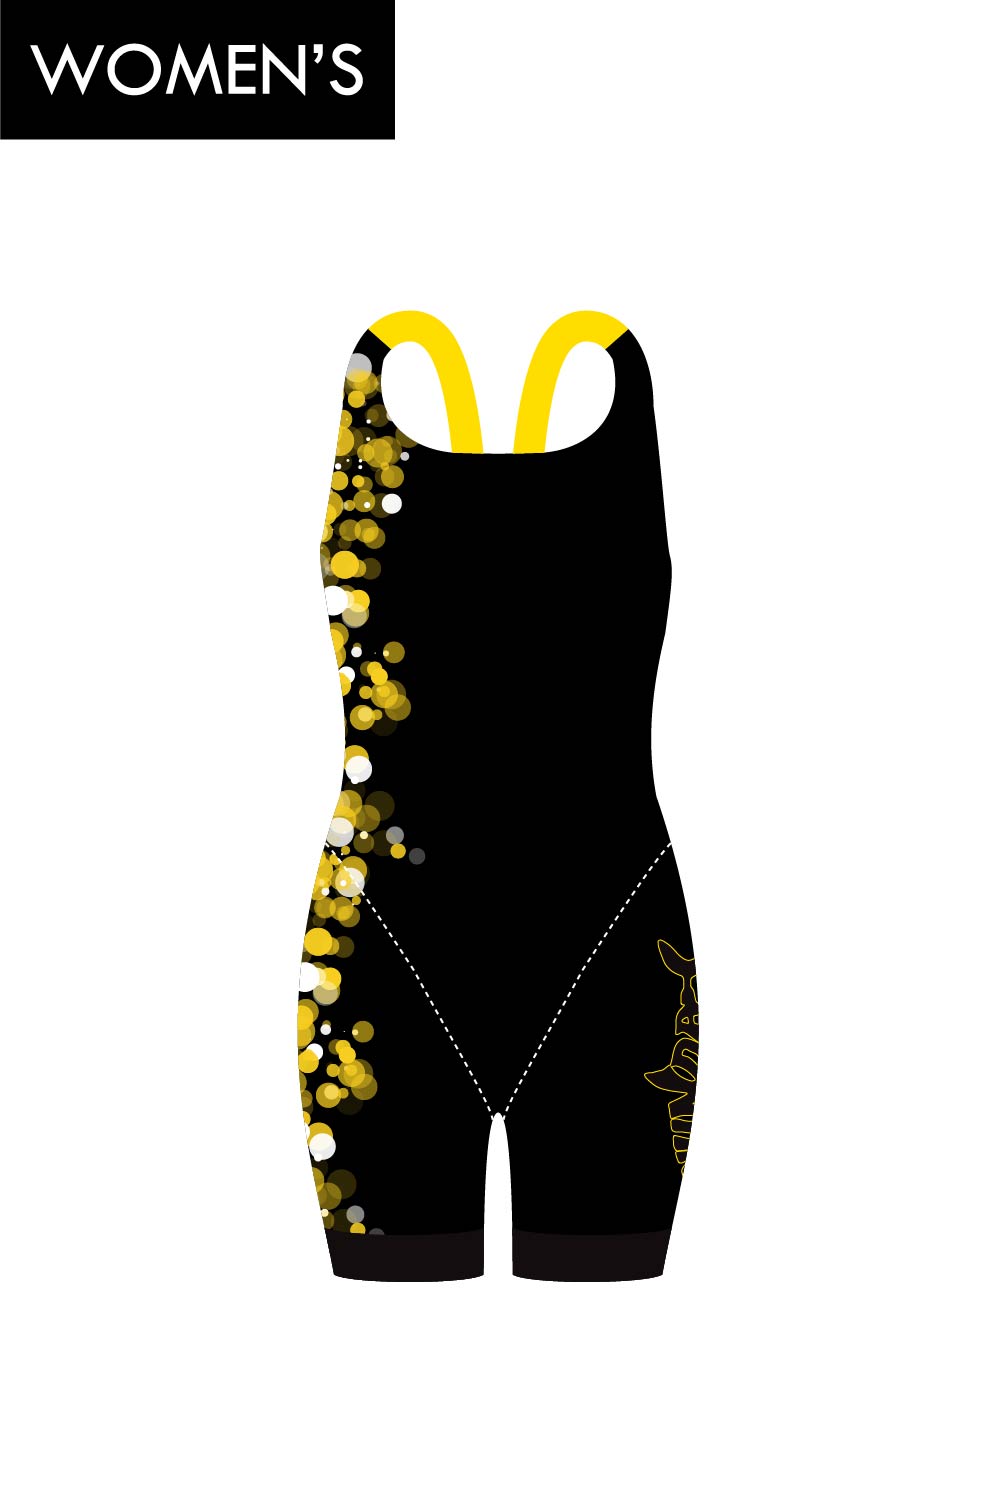 Nundah Sharks Women's Open Back Race Suit